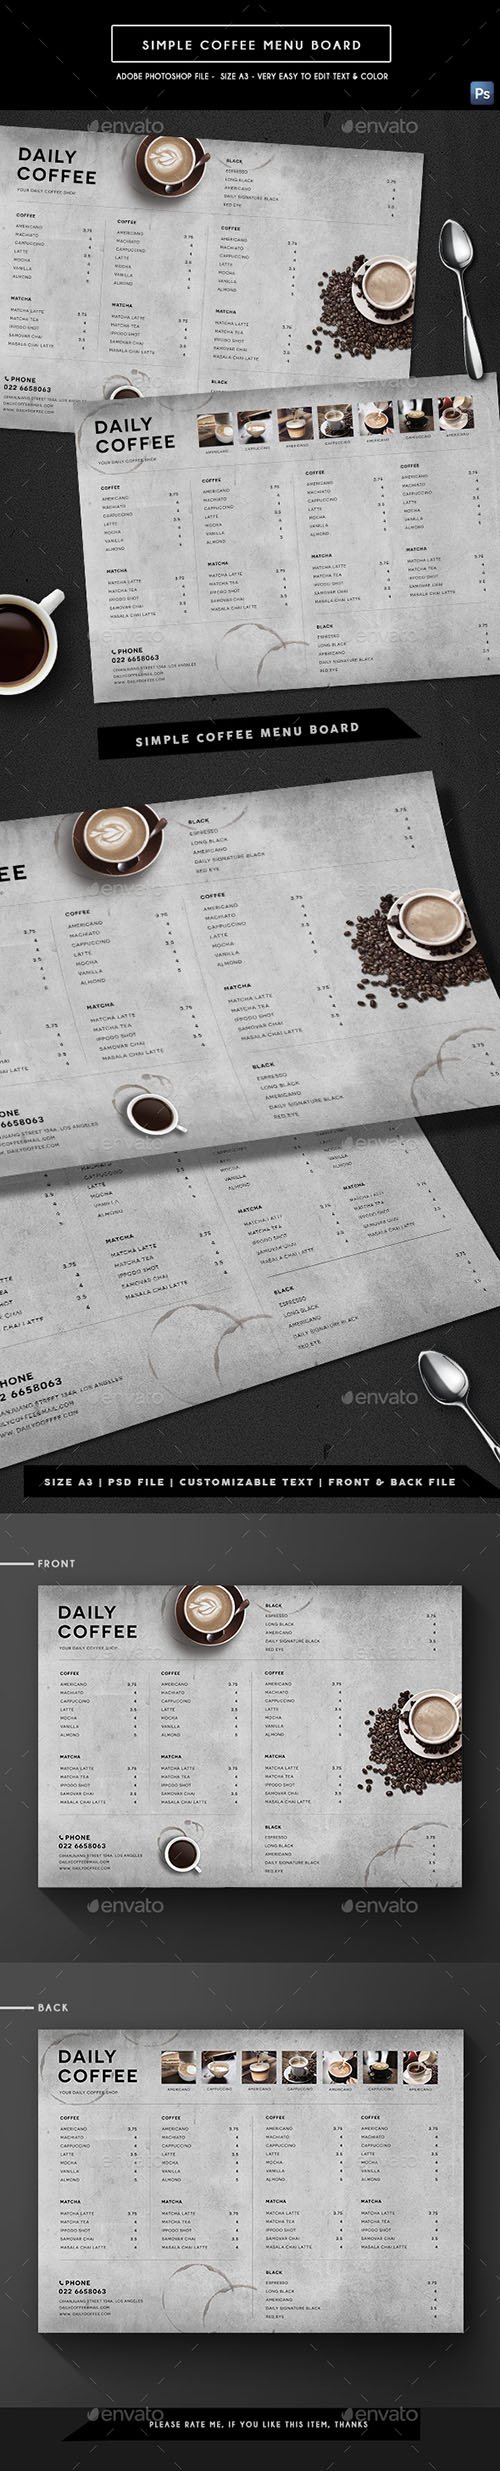 GR - Simple Coffee Menu Board 21547125